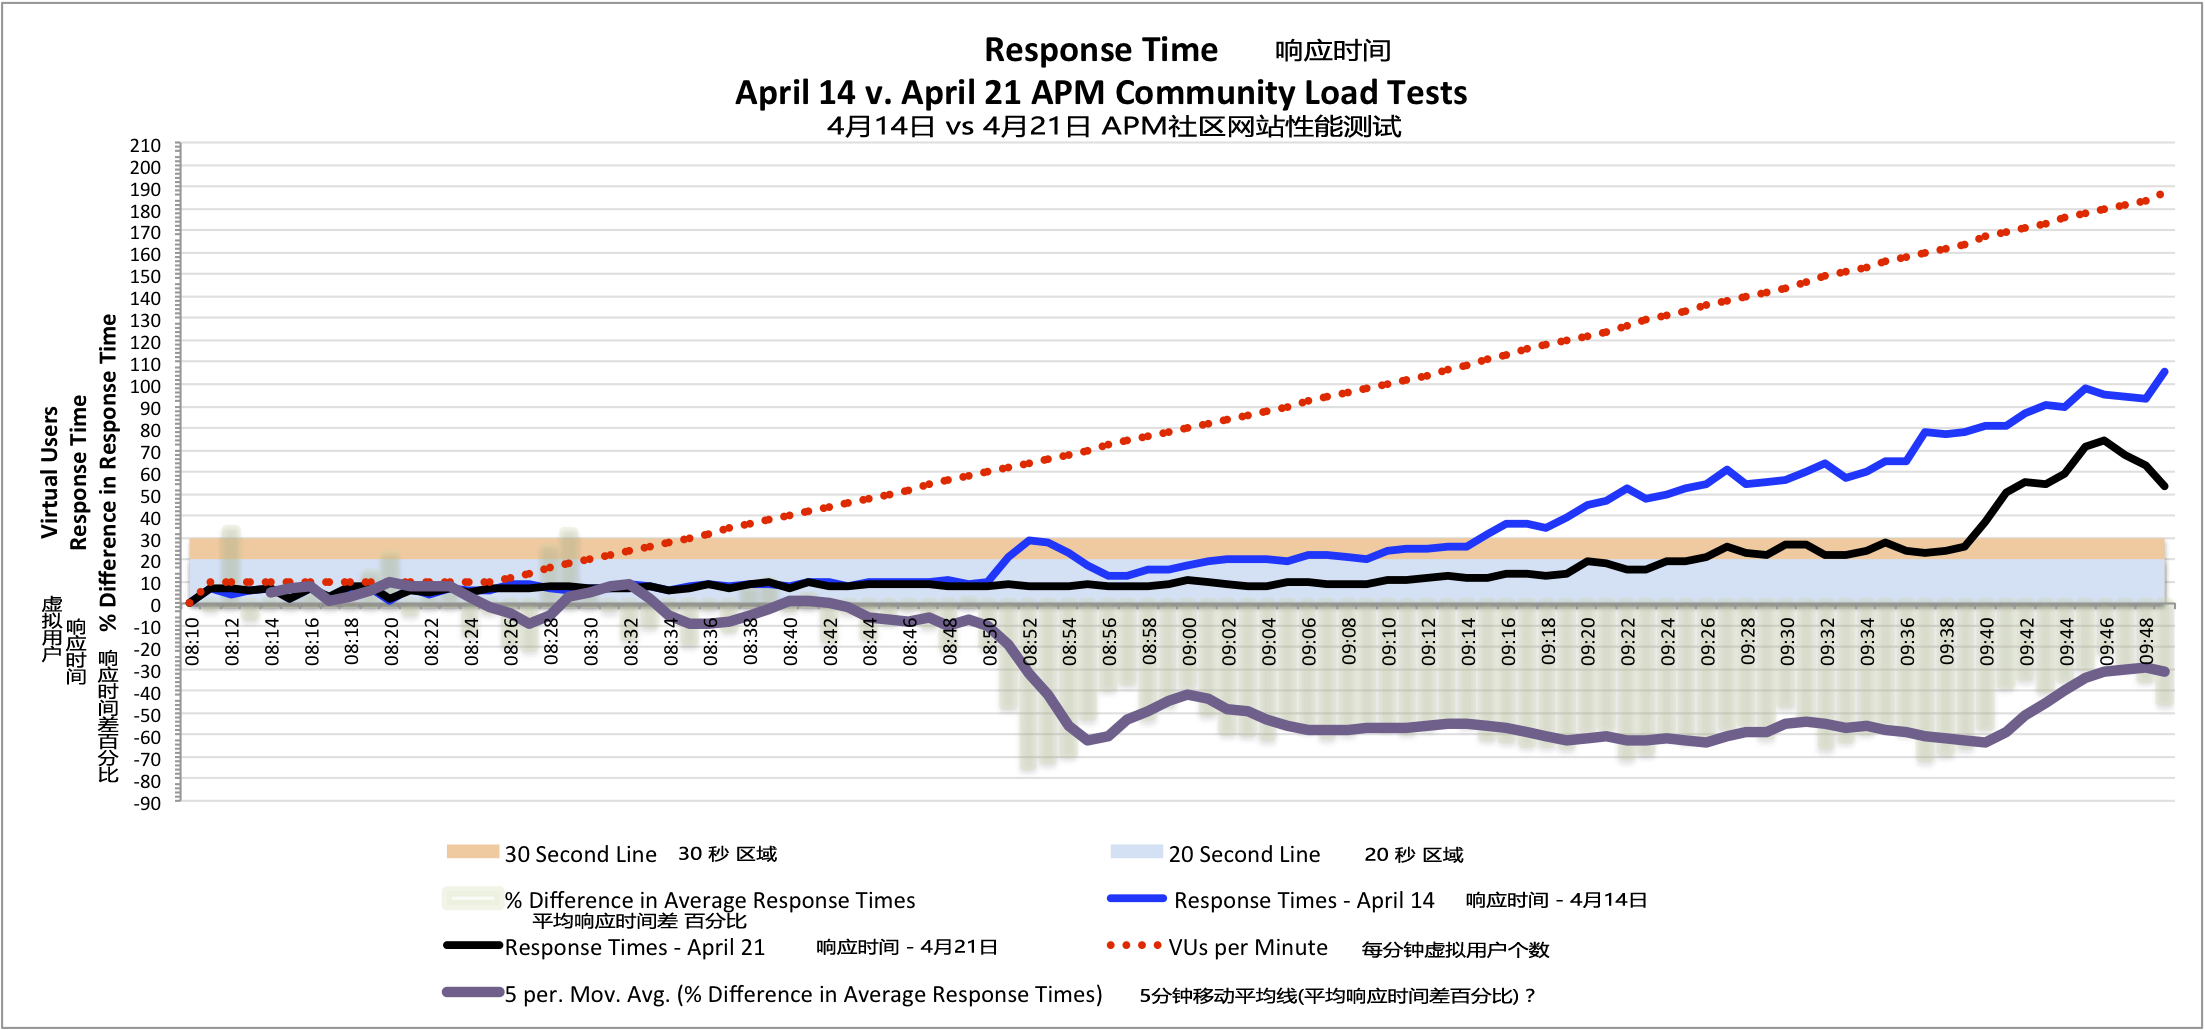 响应时间的对比表明在4月21日的APM社区网站负载测试的提升 - 更短的平均响应时间